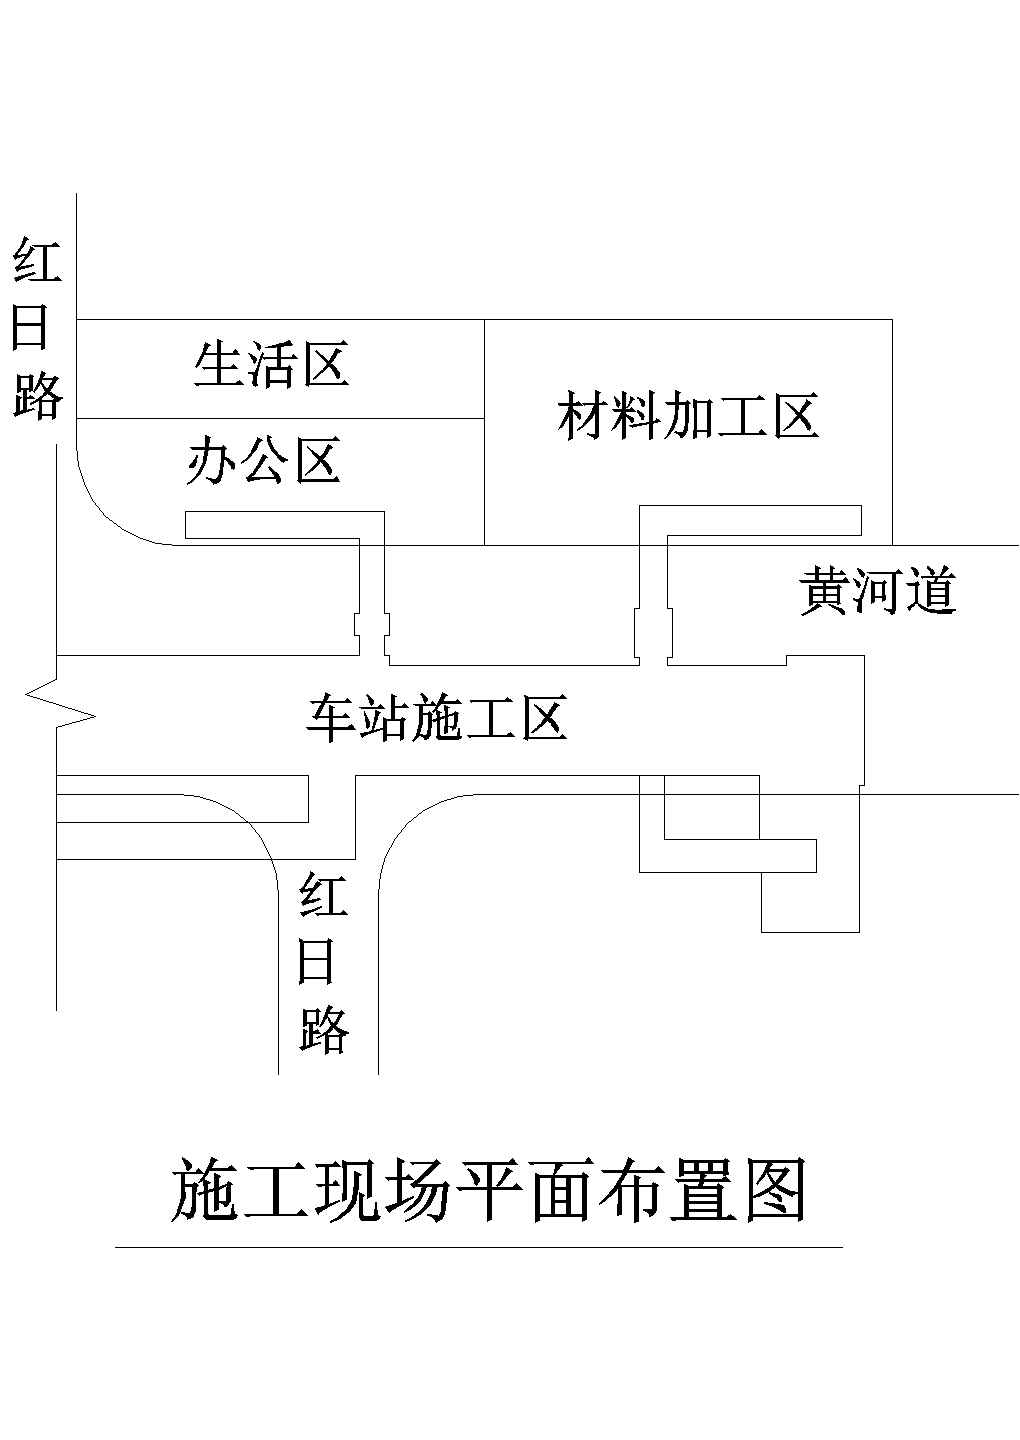 天津地铁2号线某合同段工程施工组织设计